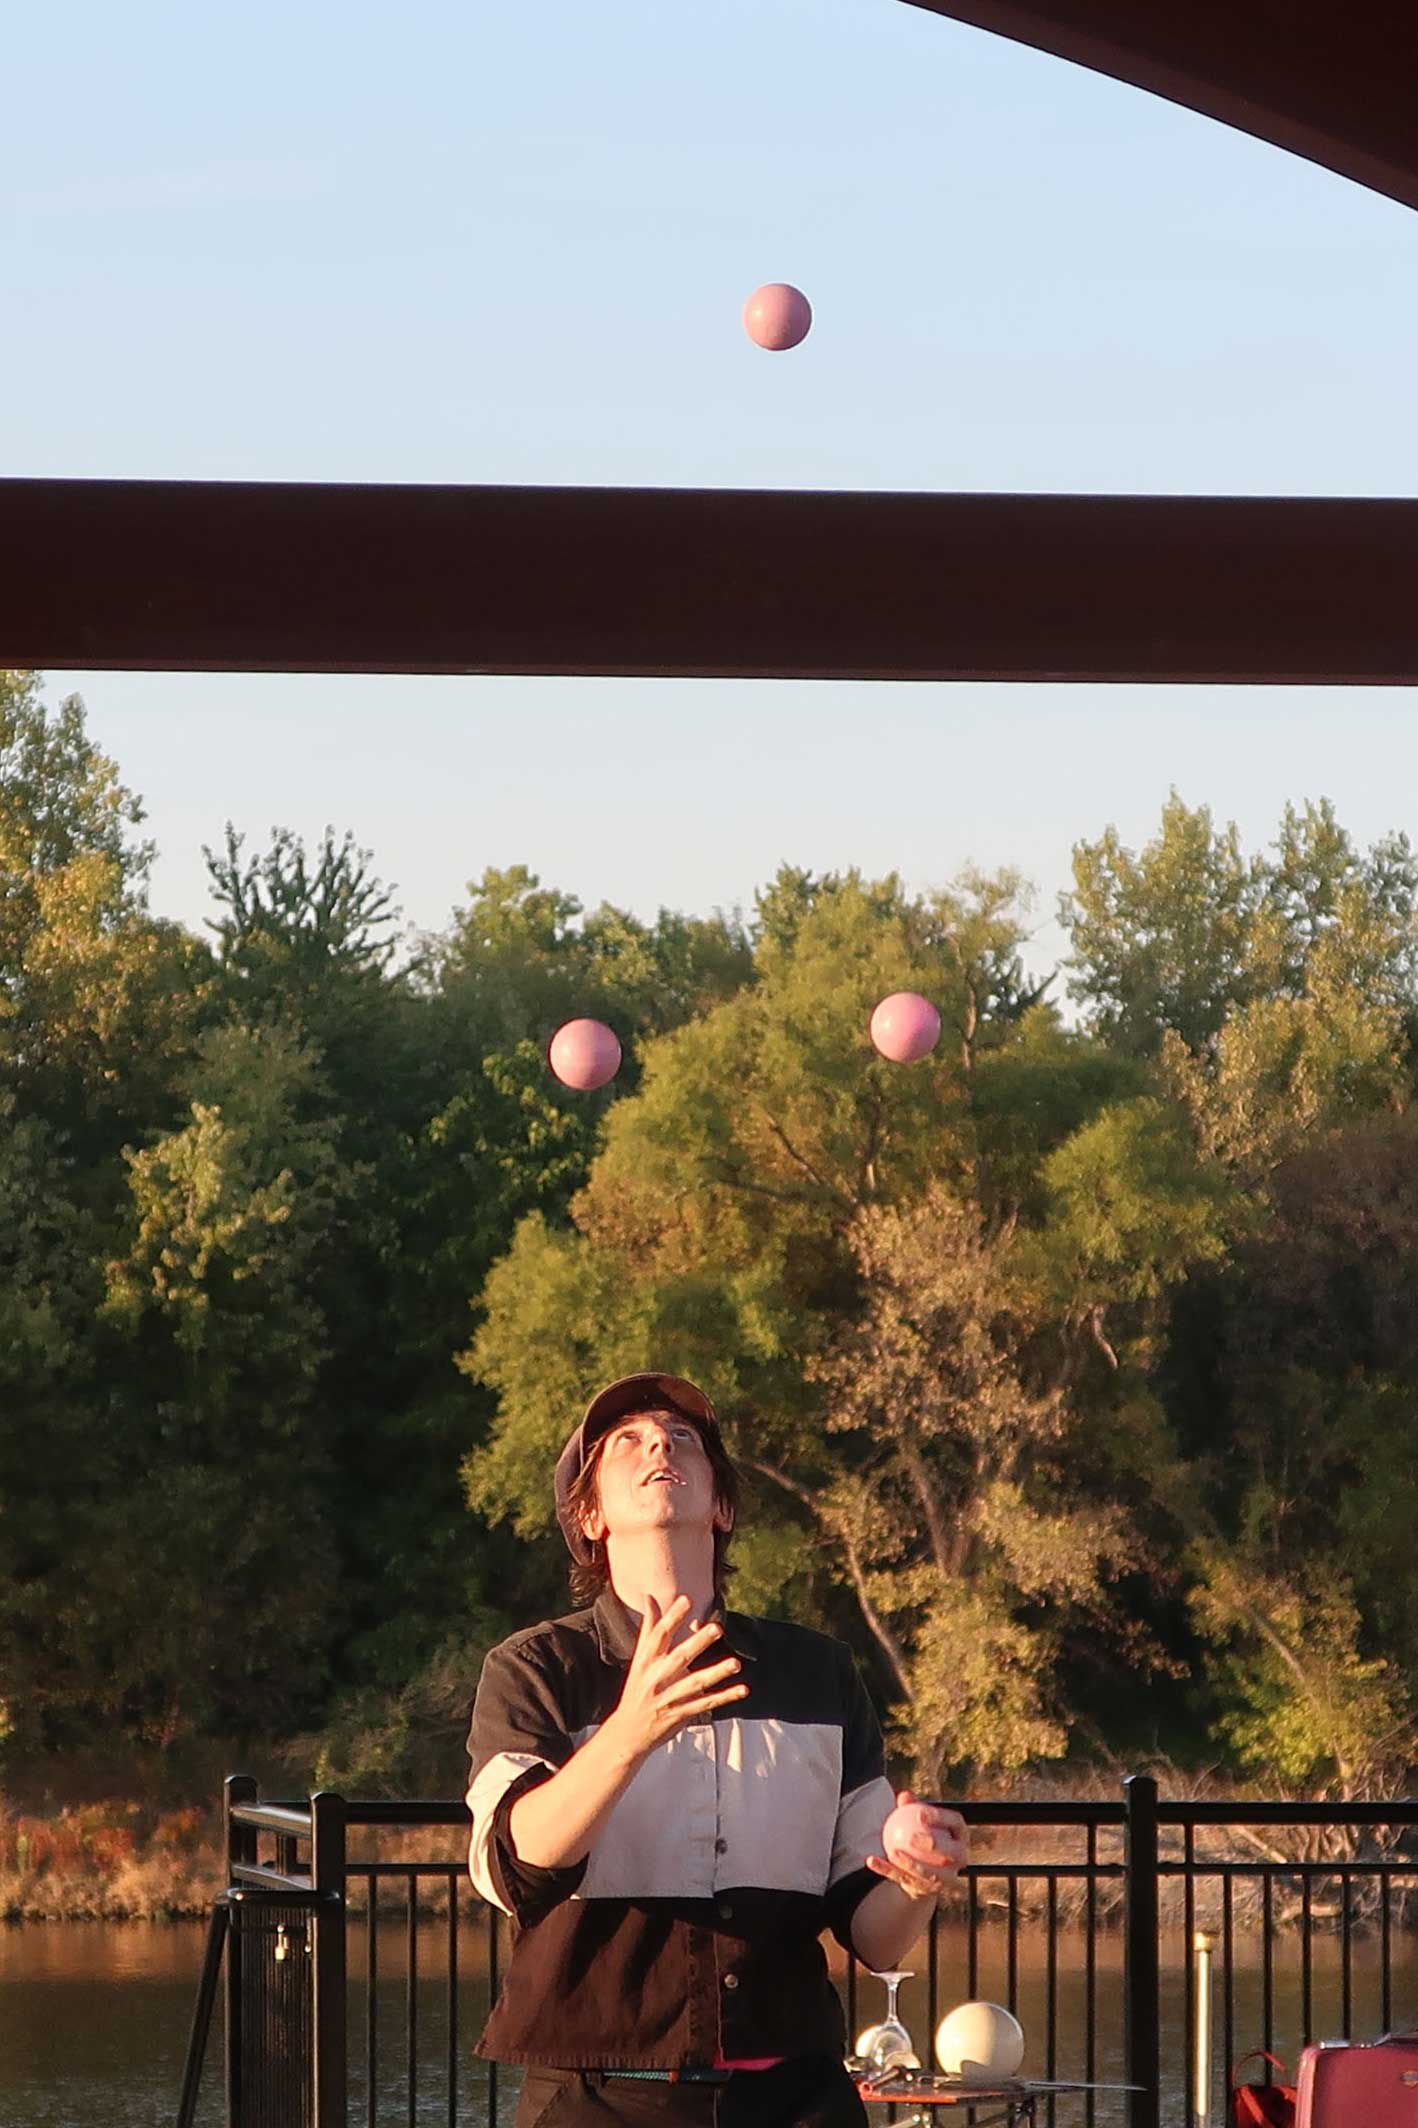 Benjamin juggles 4 balls